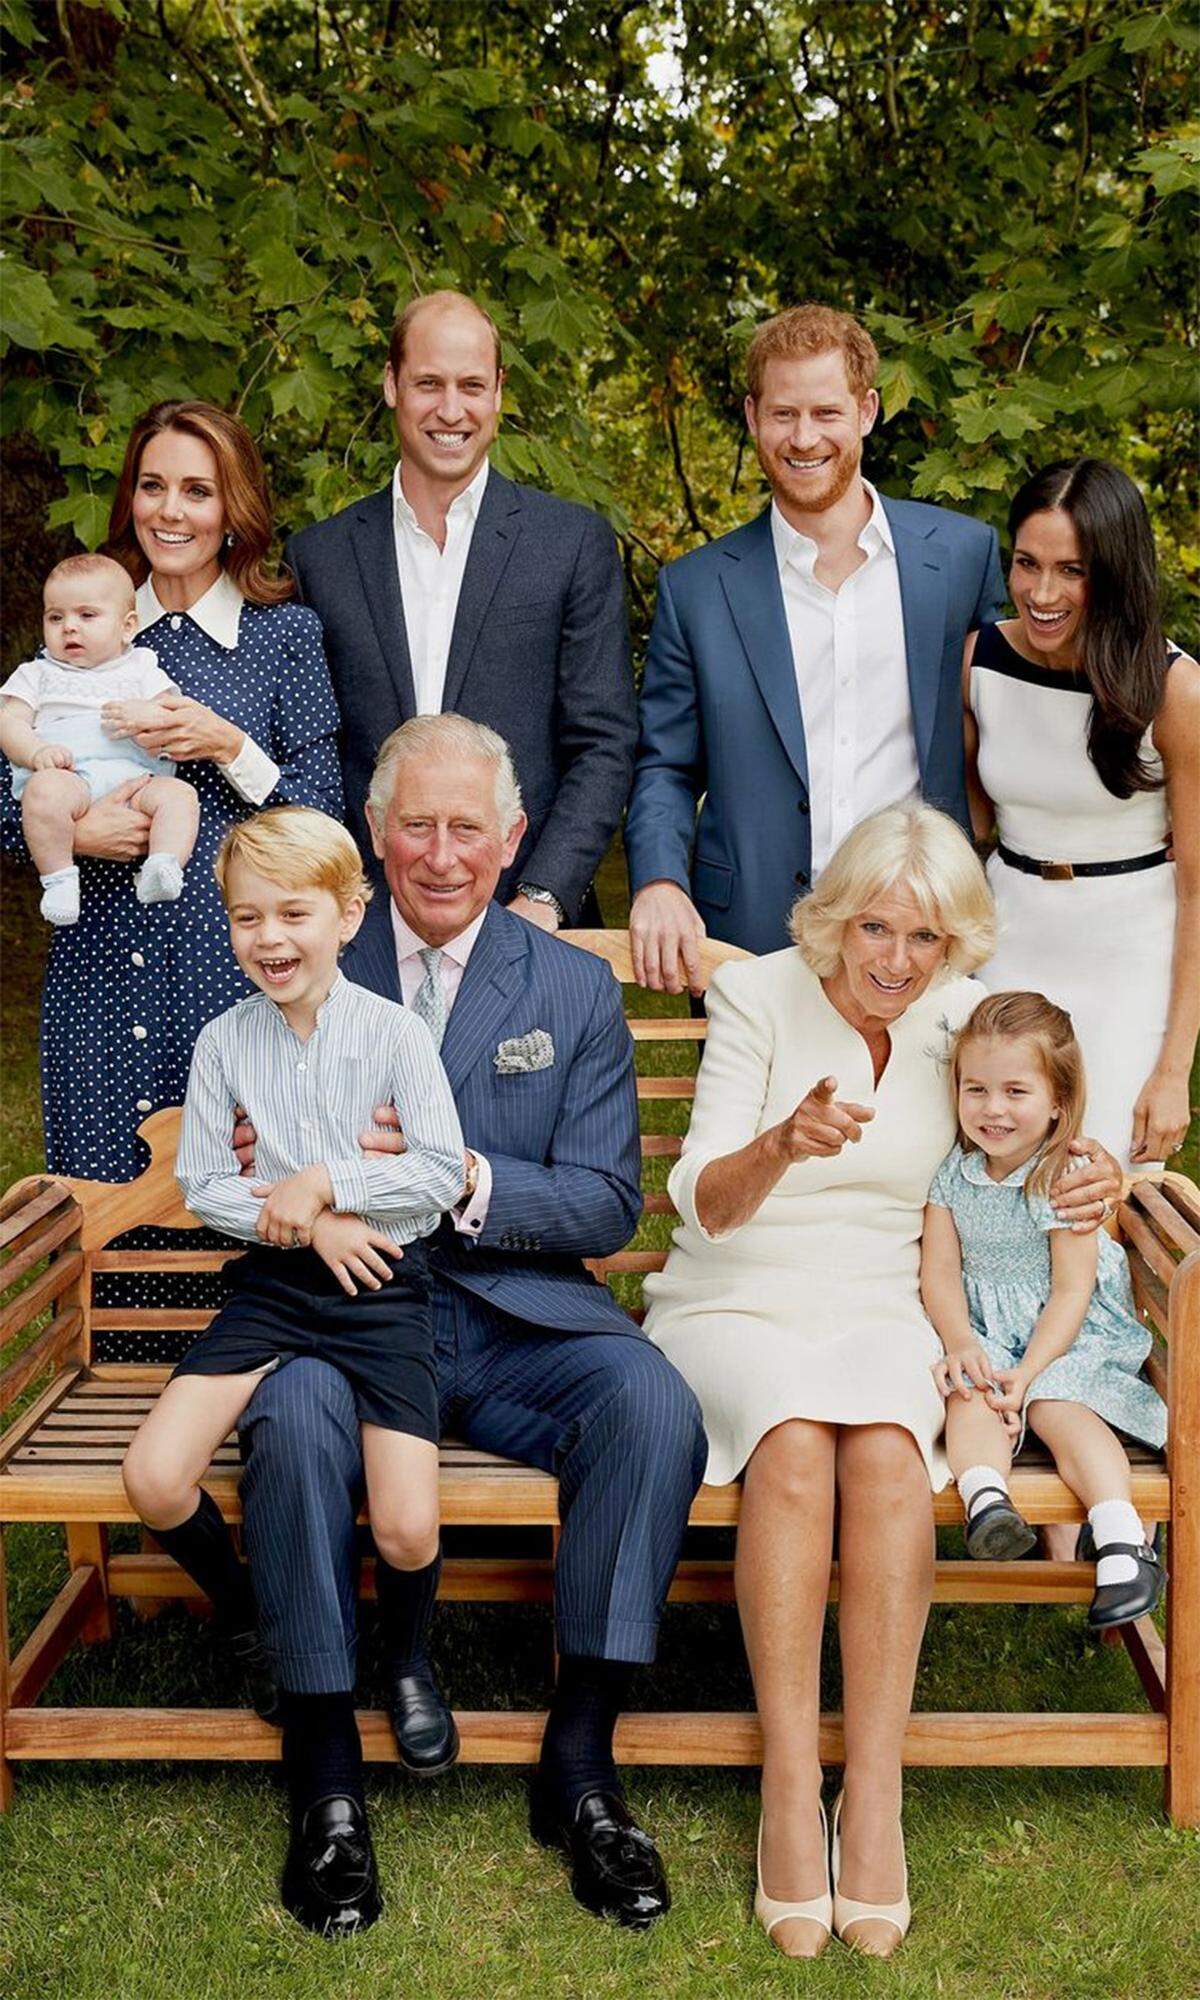 Happy Birthday Prinz Charles: Zum 70. Geburtstag des Thronfolgers im November durfte auch Meghan am offiziellen Familienporträt nicht fehlen. Den Moment ehrte die Herzogin in einem weißen Kleid. Aufgenommen wurde das Bild im September 2018, als Charles' Enkelkind Nummer vier noch ganz inoffiziell unterwegs war.